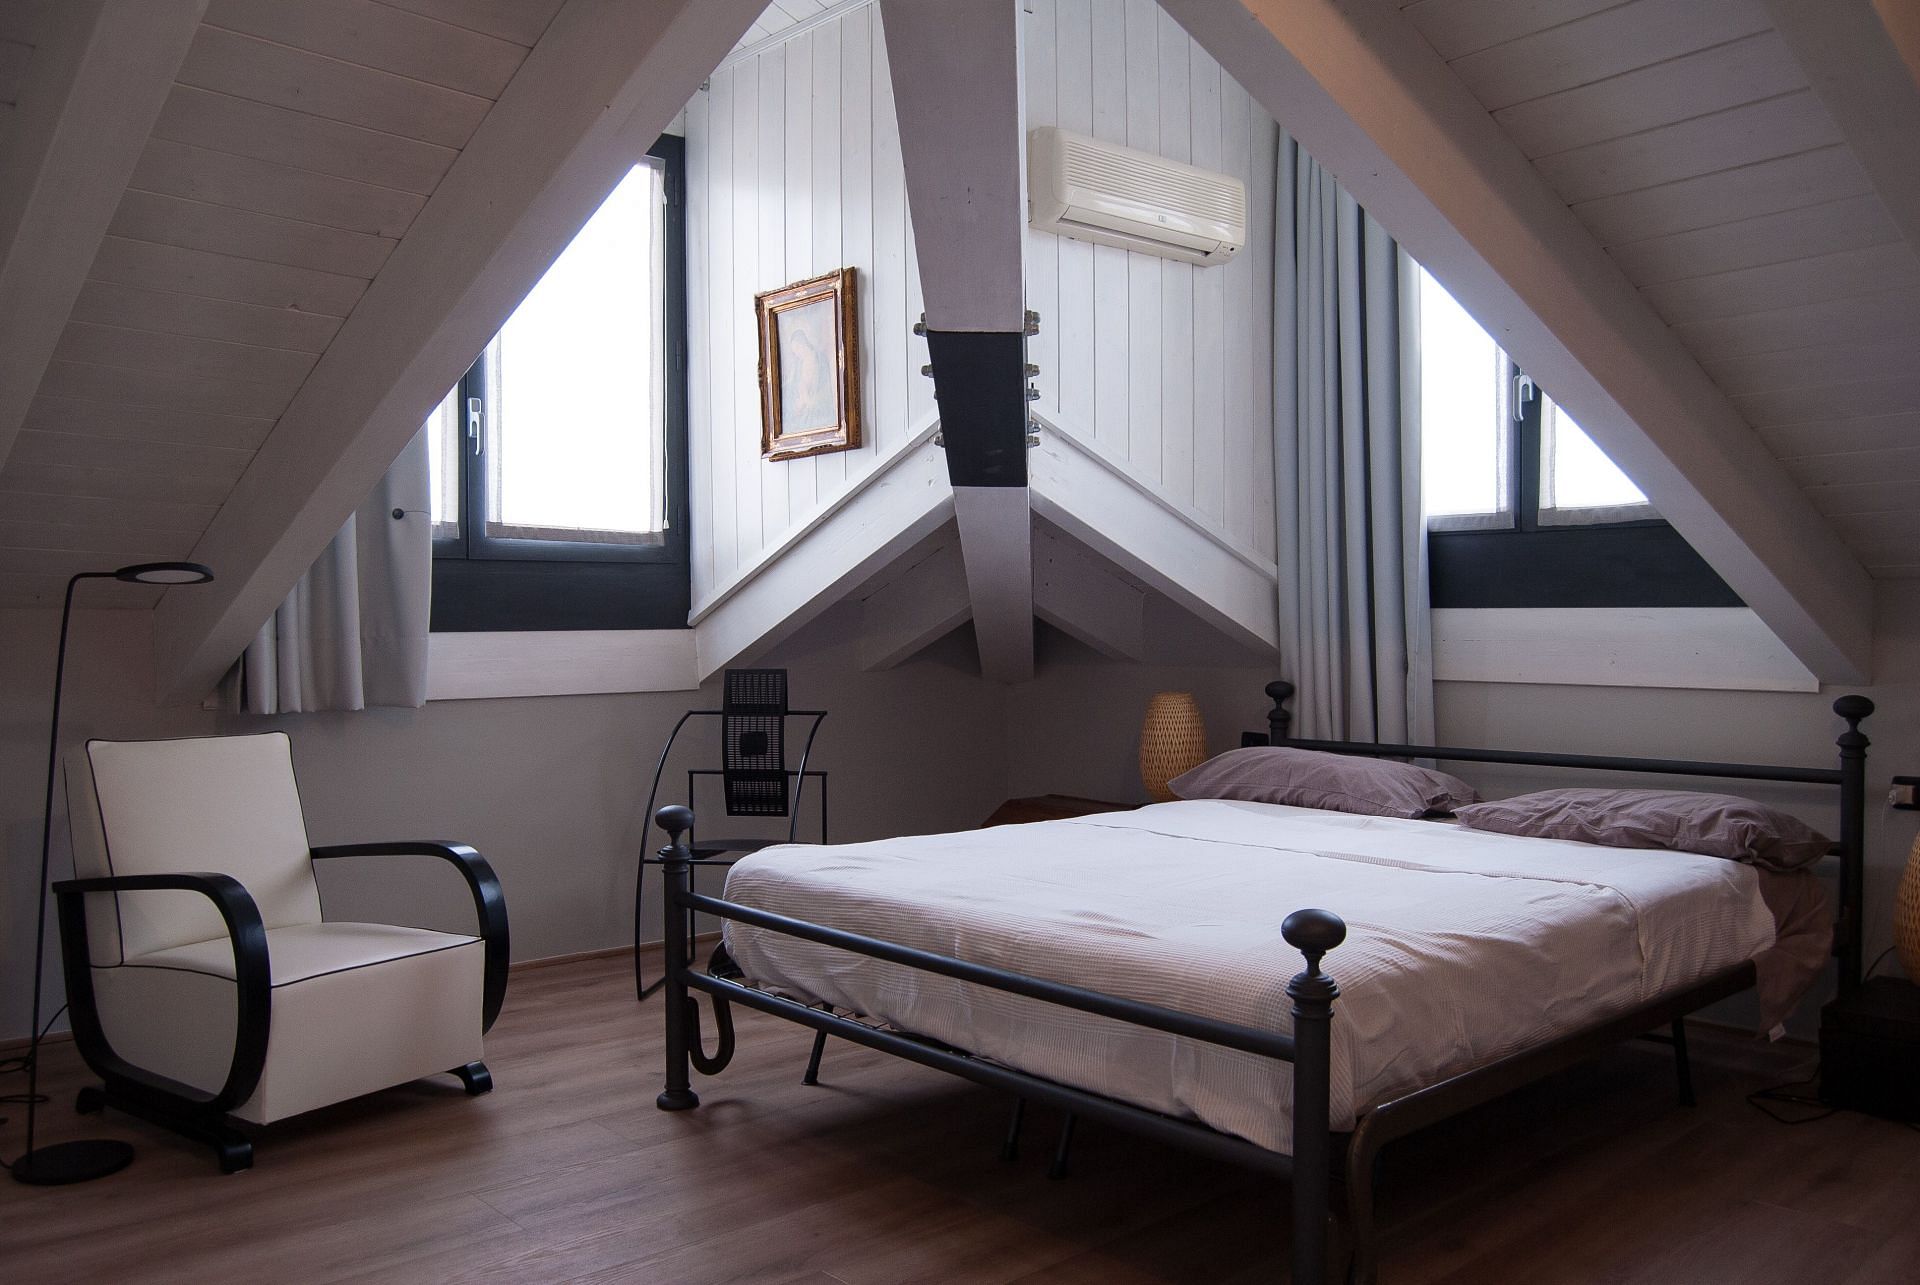 Have a cozy room to sleep. (Image via Unsplash/Antonio caverzan)